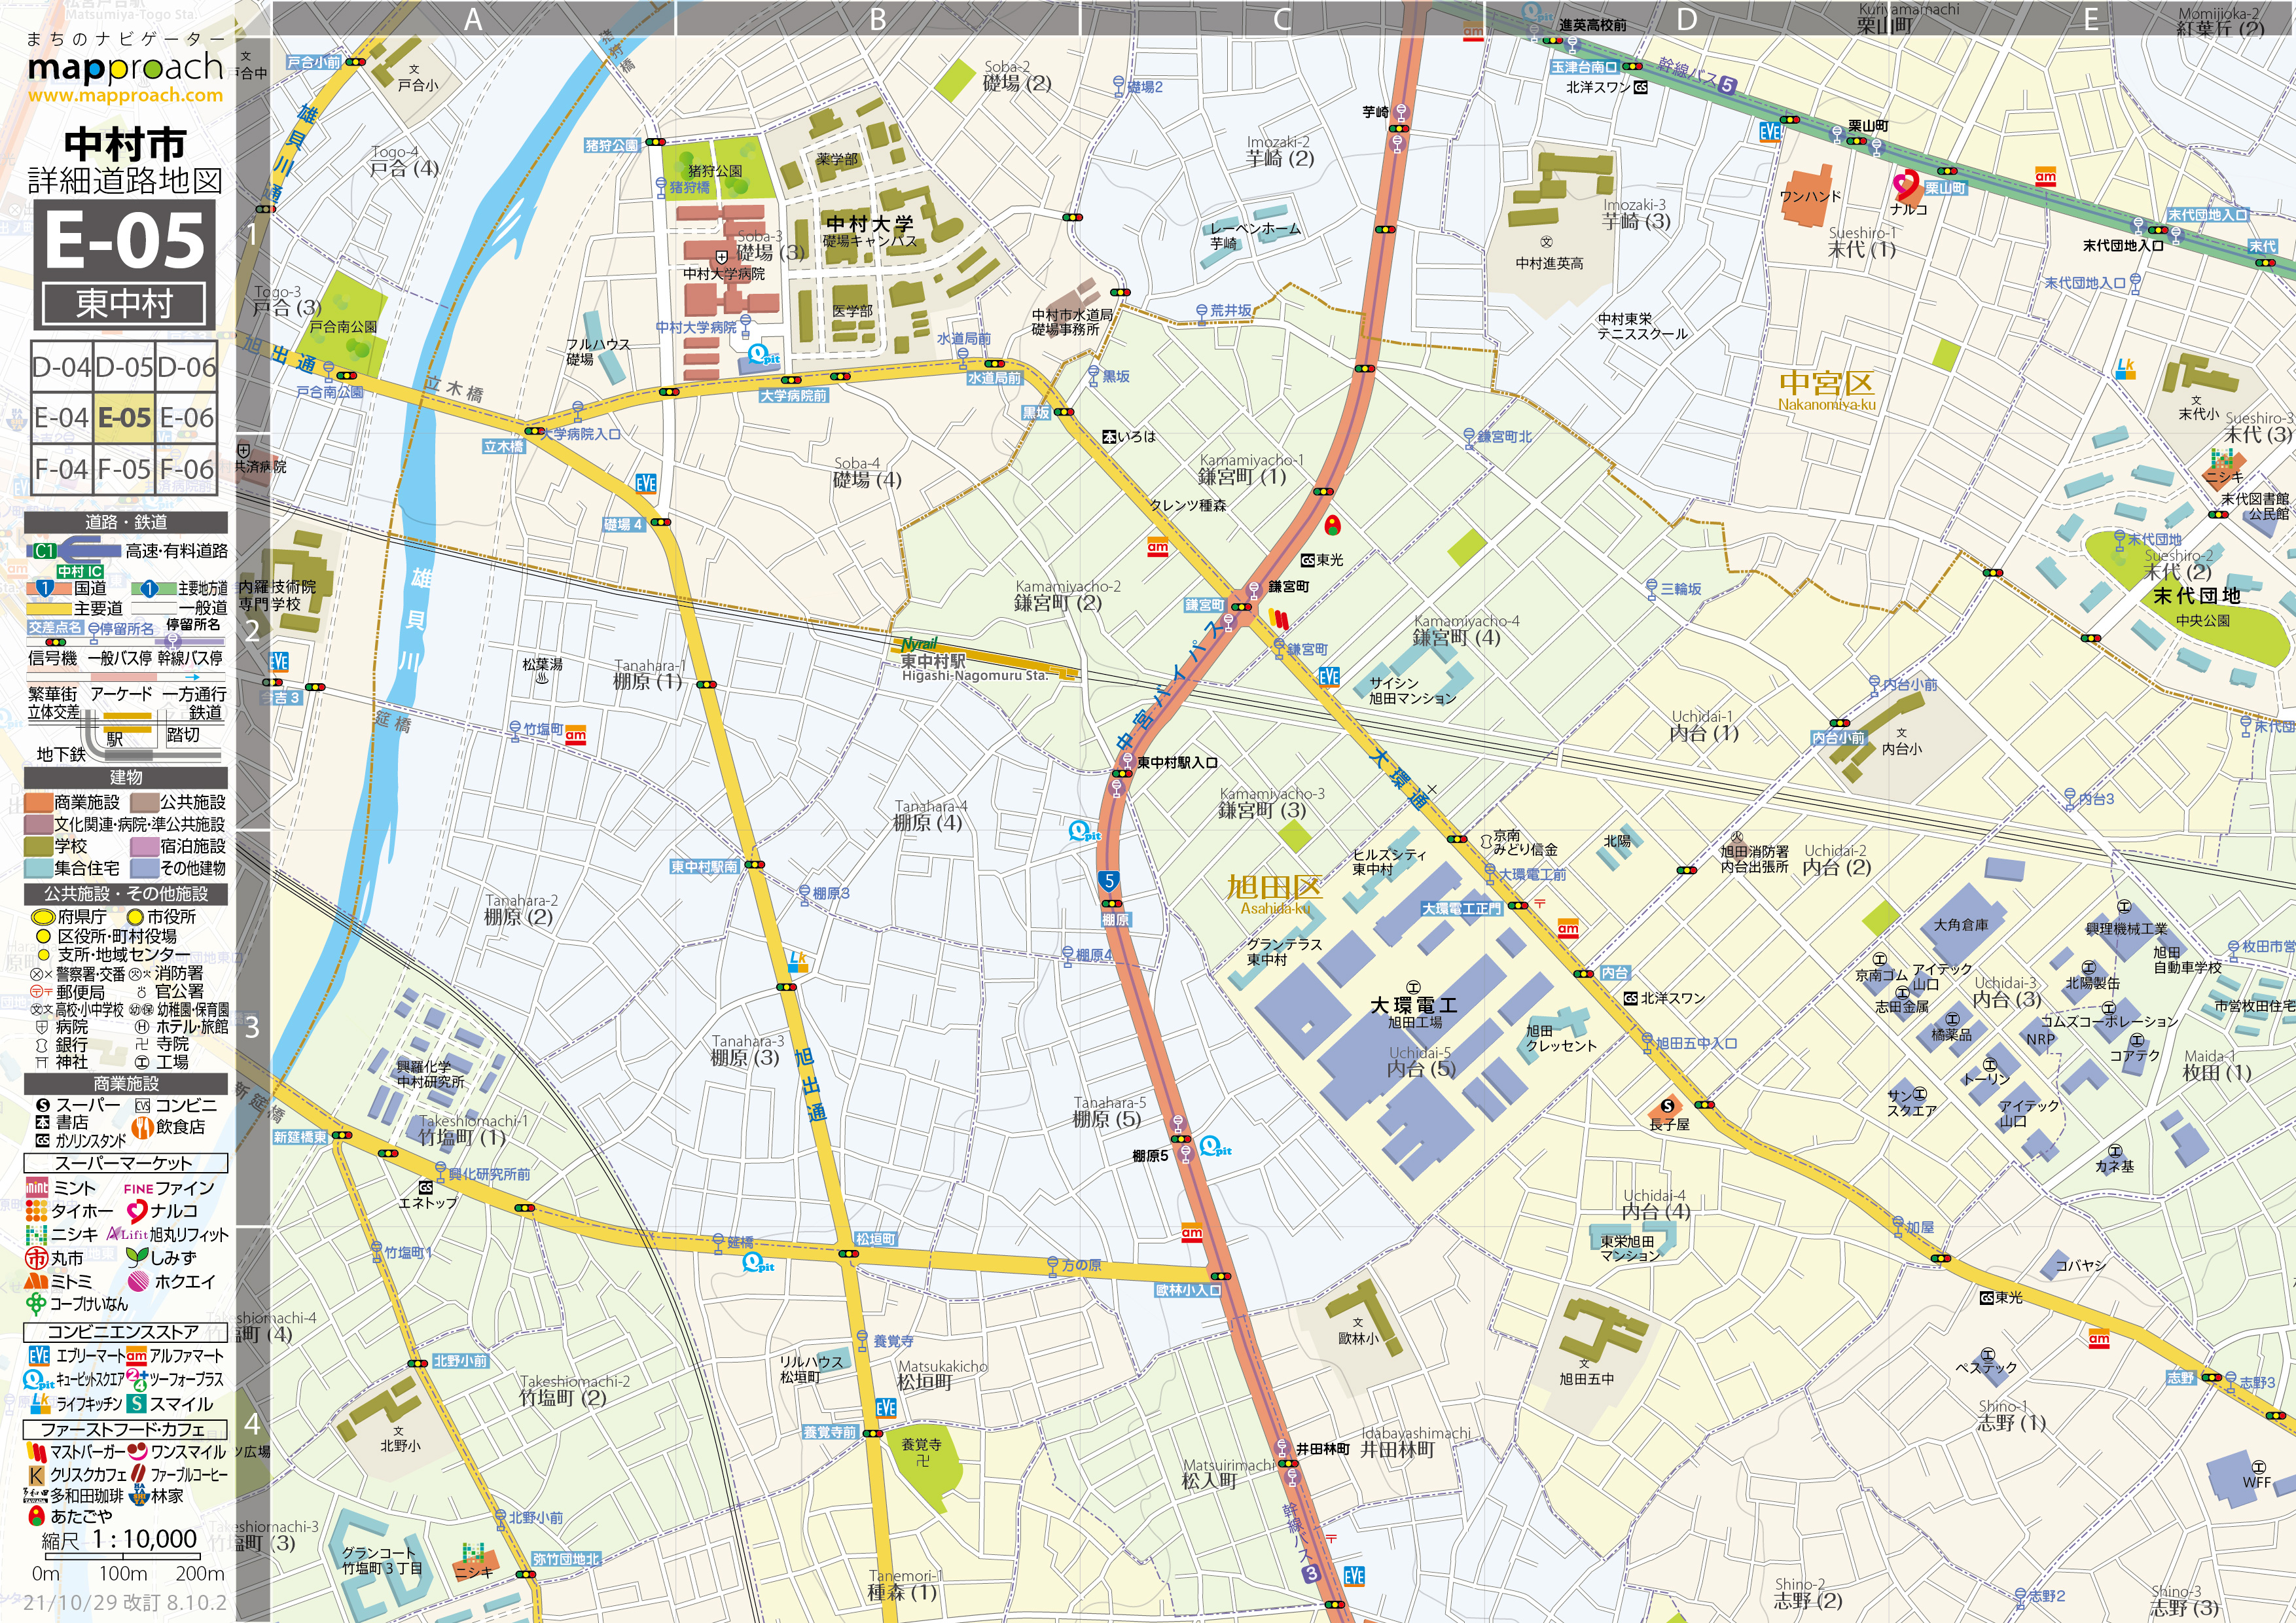 E-05 東中村 地図拡大